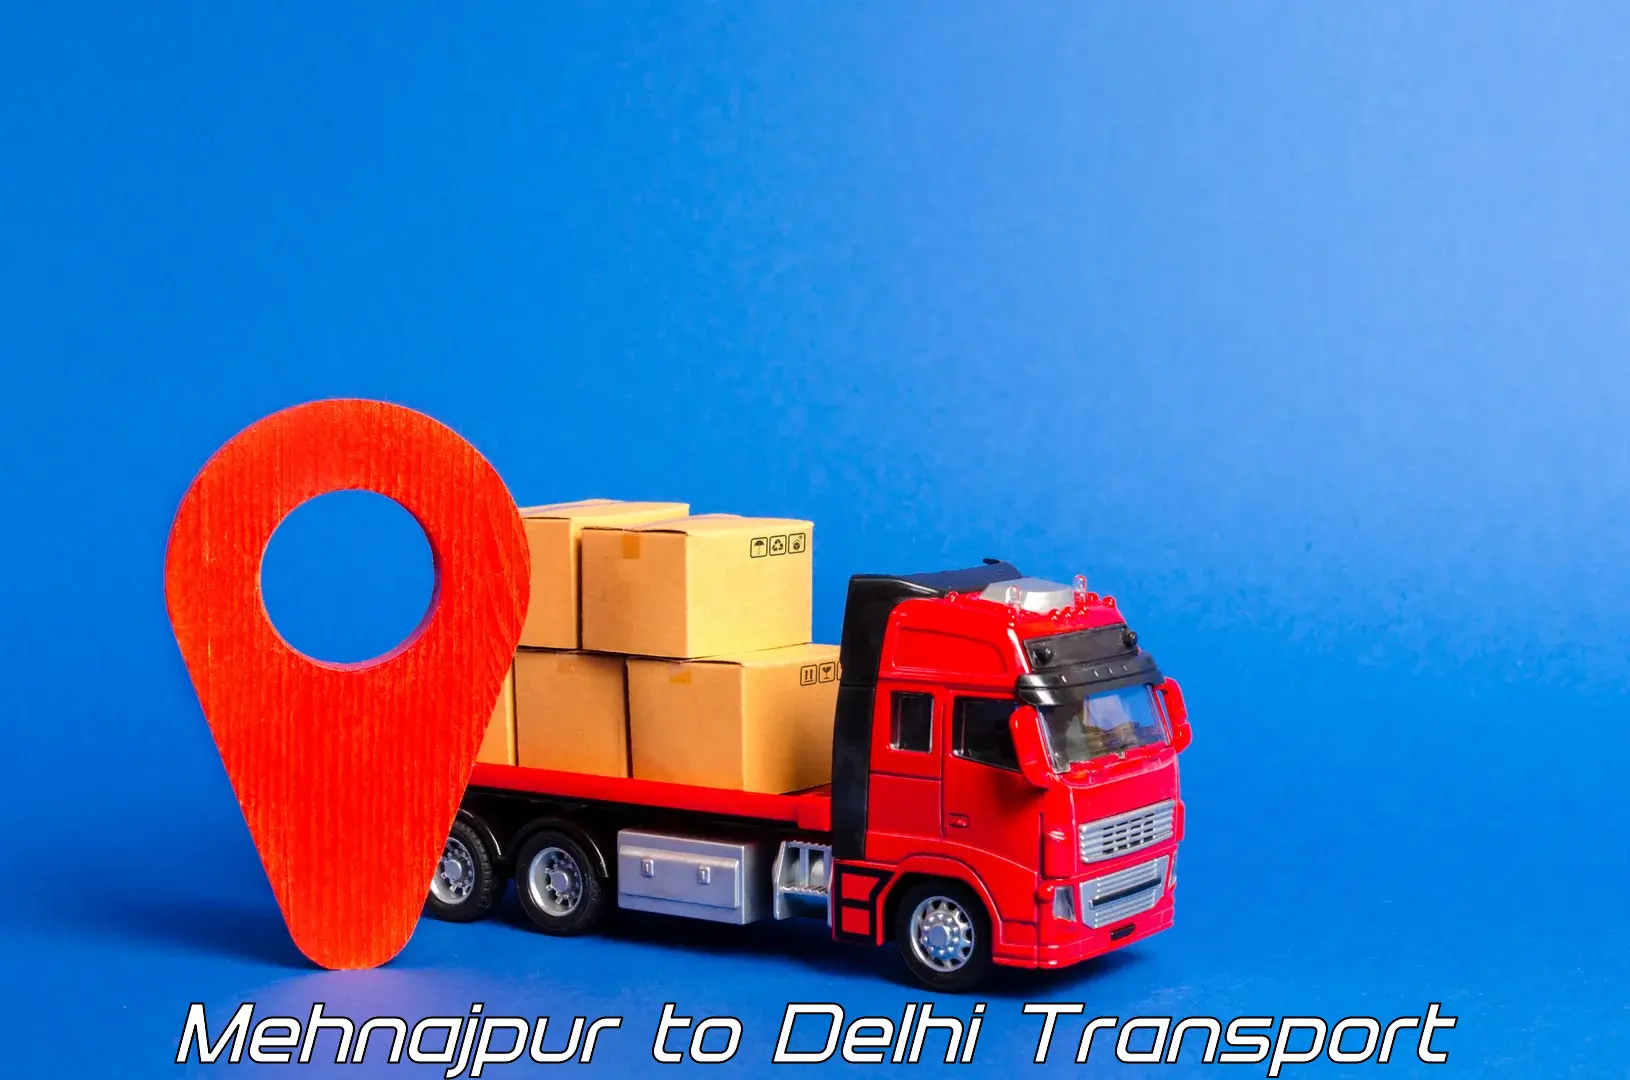 Online transport booking Mehnajpur to Jamia Millia Islamia New Delhi